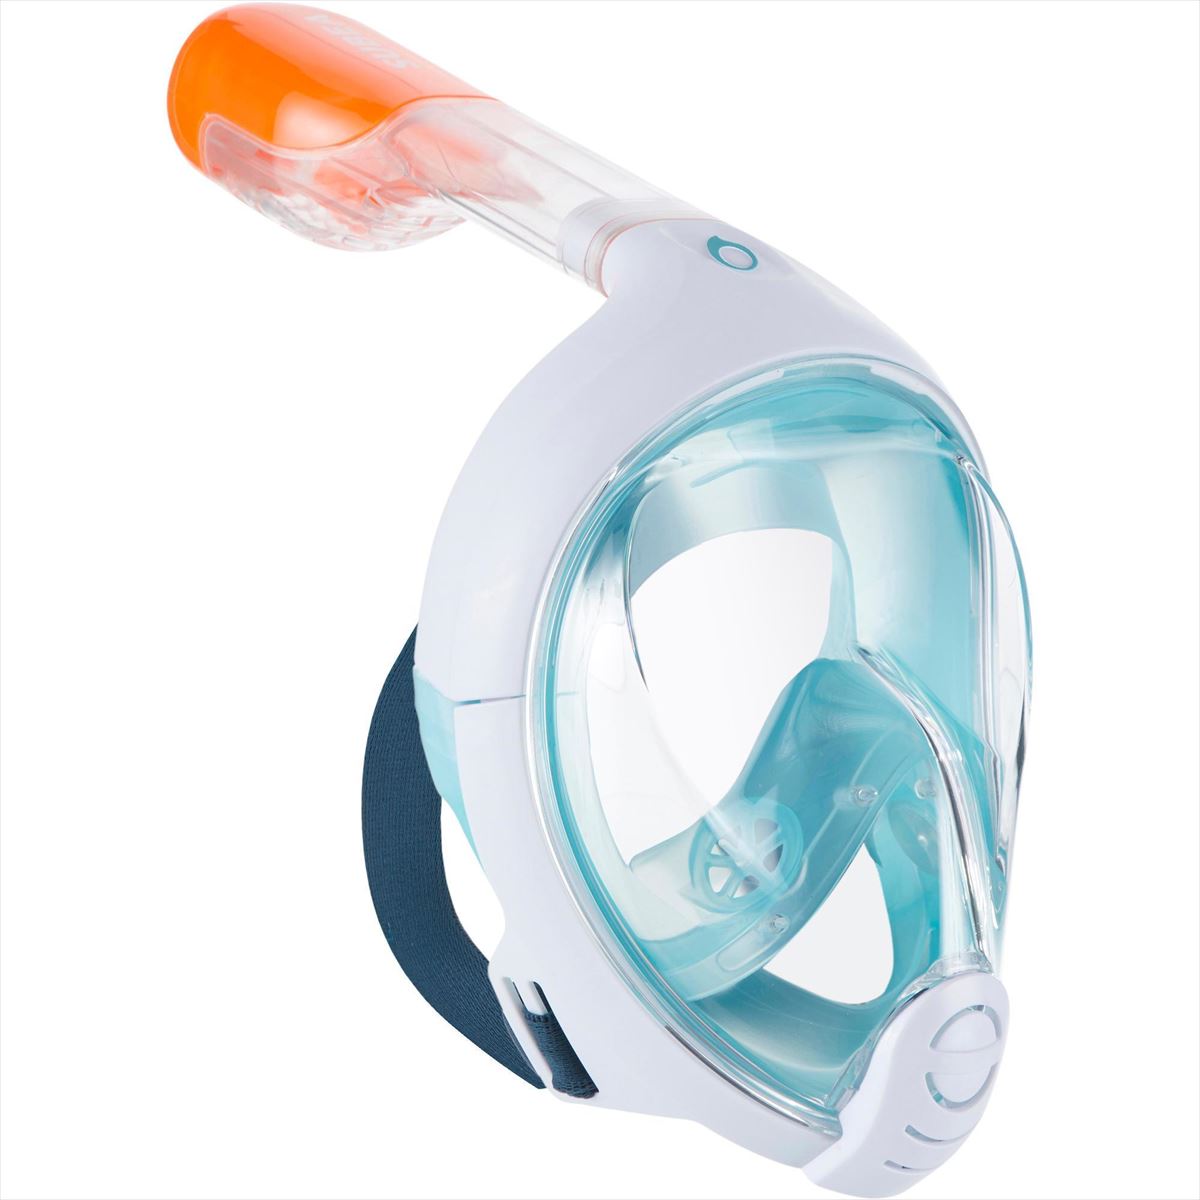 La máscara de snorkel de Decathlon que puede servir como respirador.